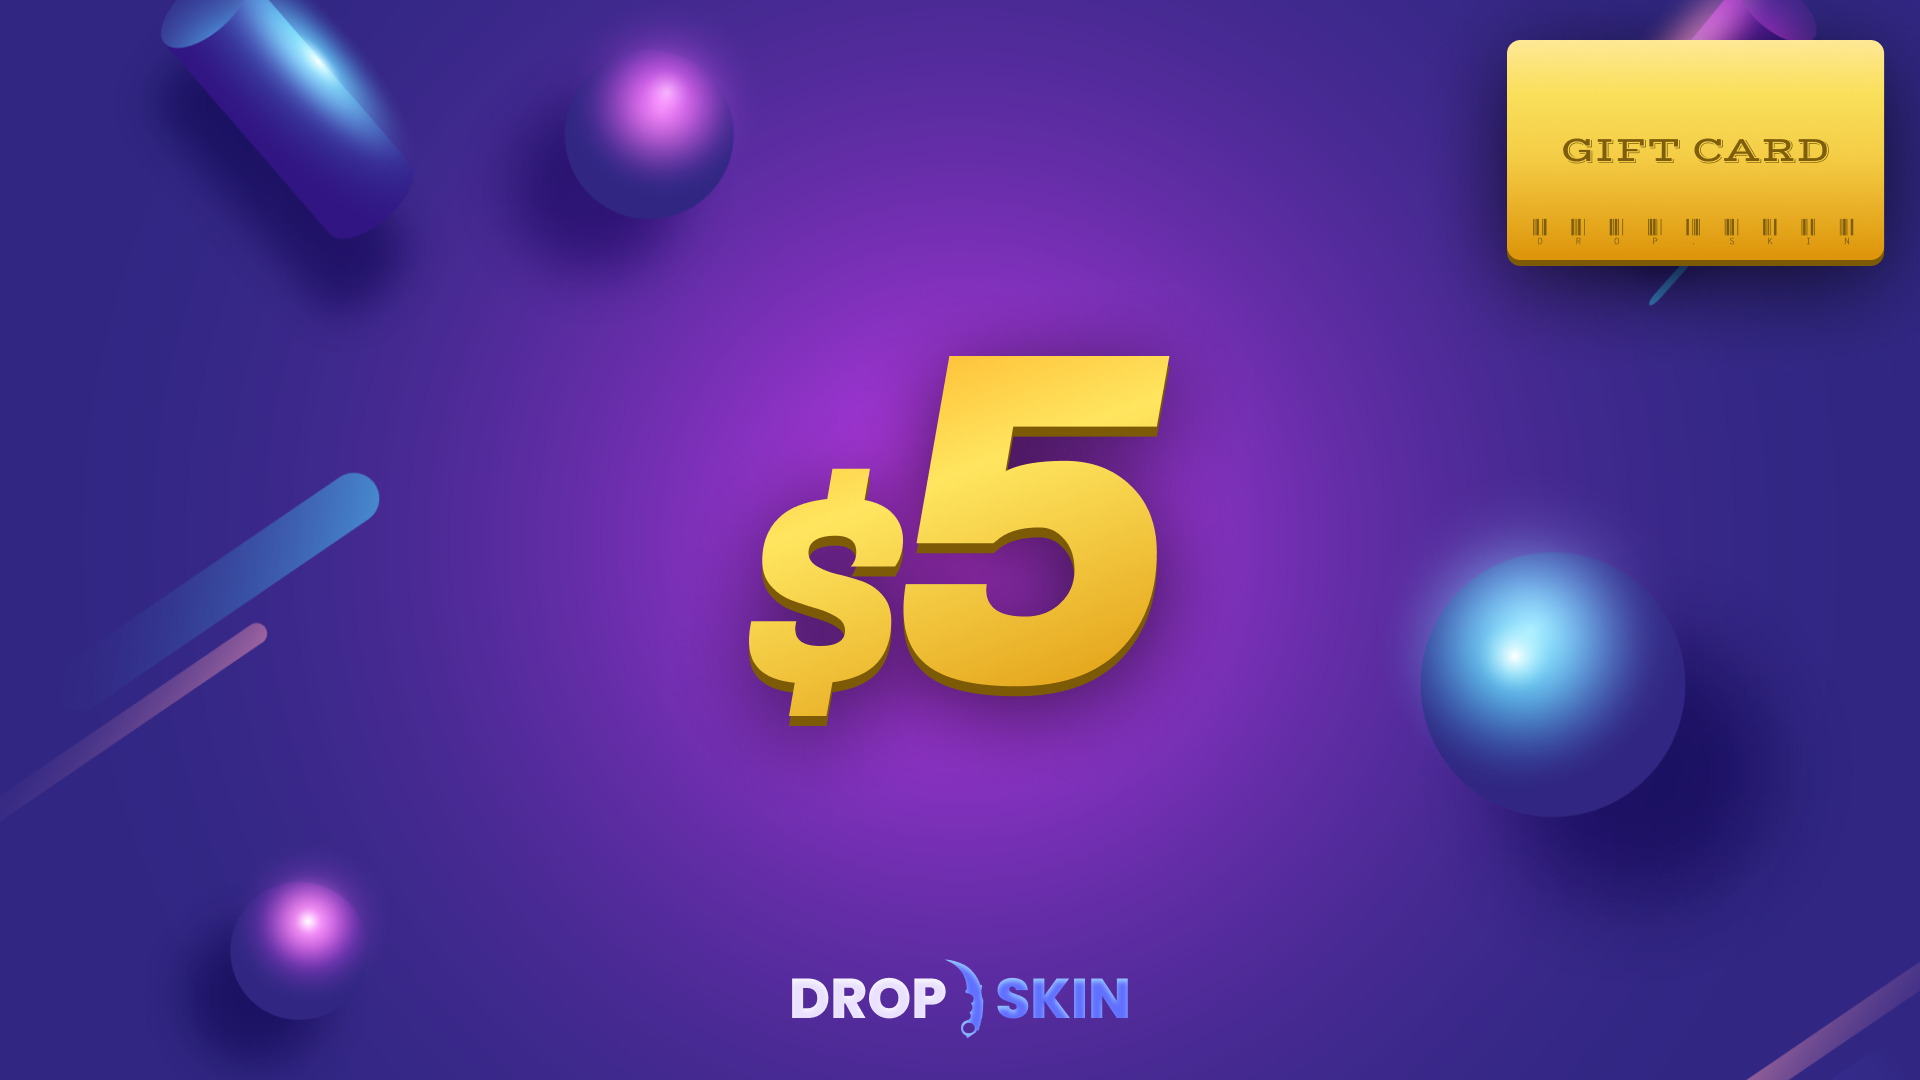 Drop.skin $5 Gift Card